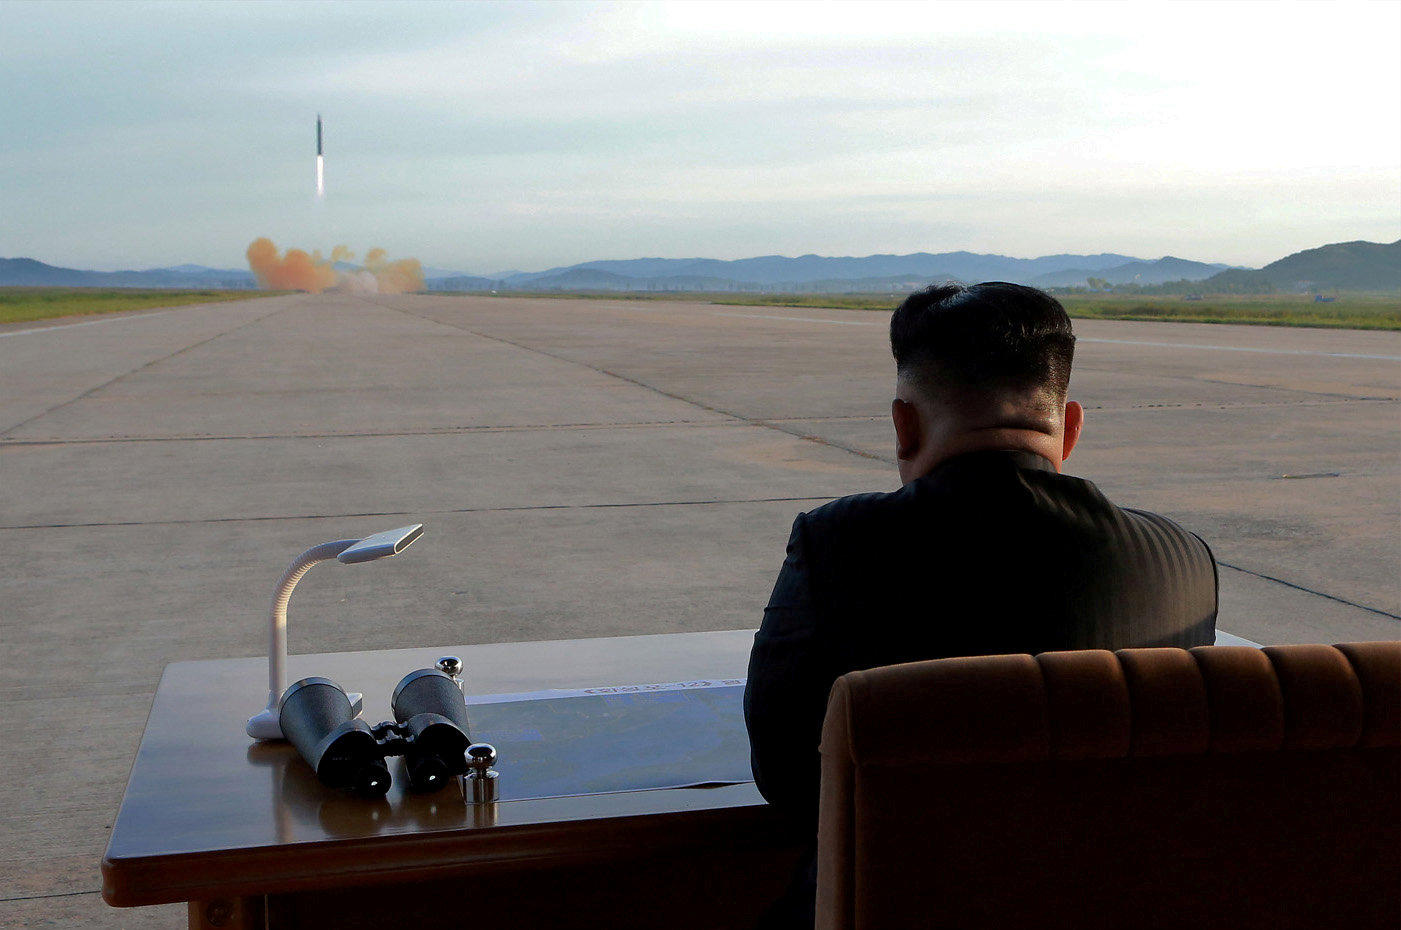 Βόρεια Κορέα: Νέος νόμος προβλέπει ακόμα και προληπτικές πυρηνικές επιθέσεις